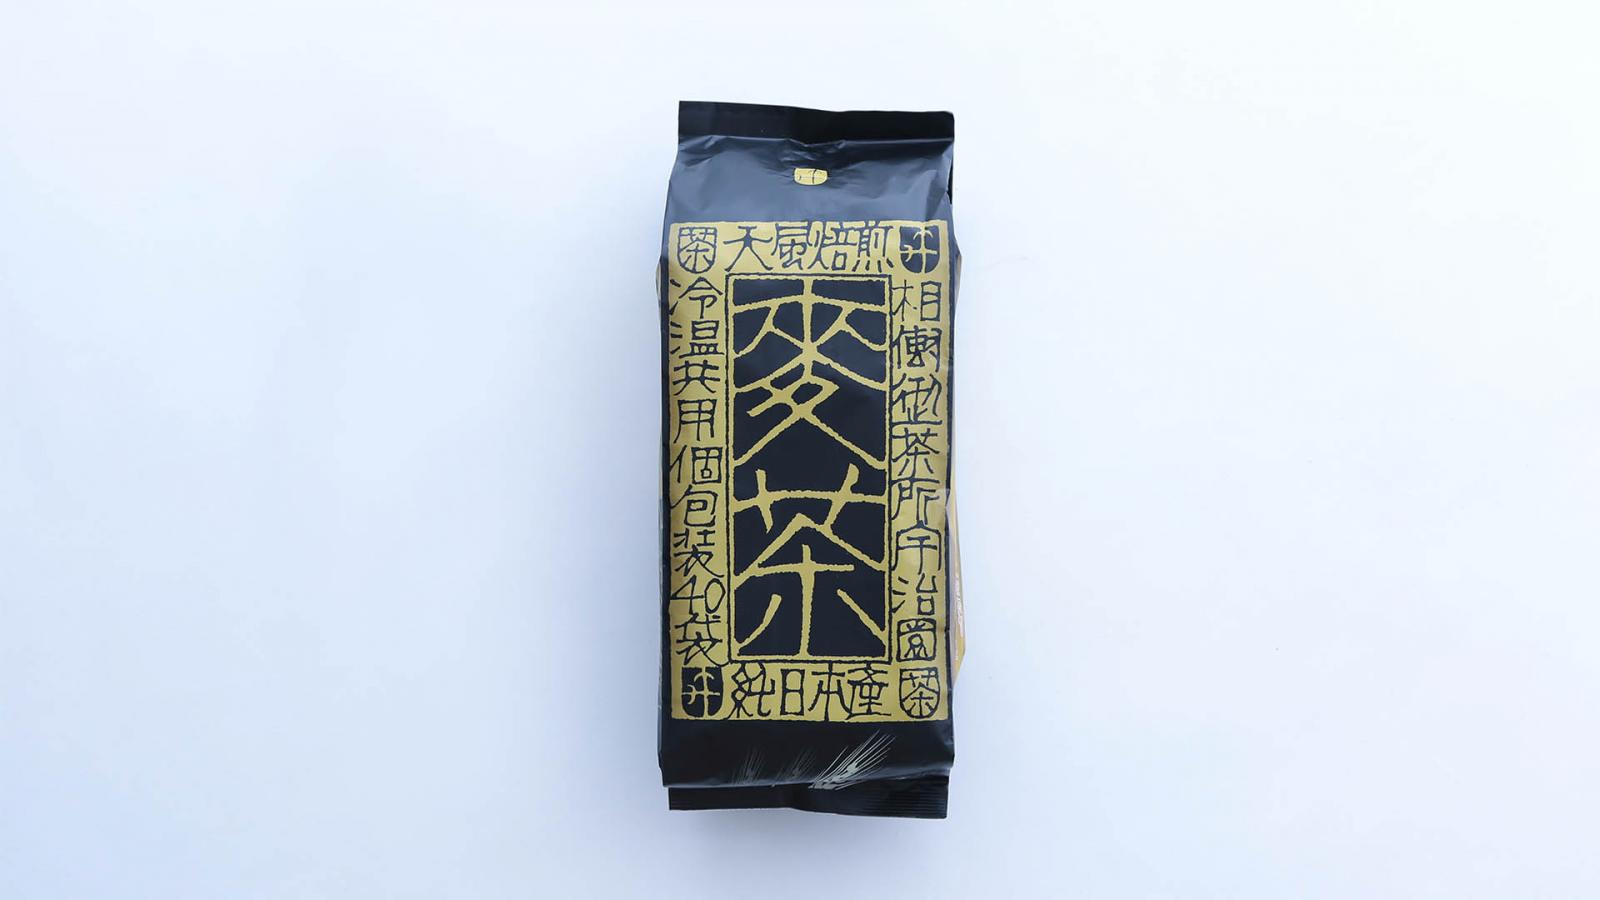 麦茶】天風焙煎麦茶 ティーバッグ 袋入り (12.5g×40パック) – 宇治園